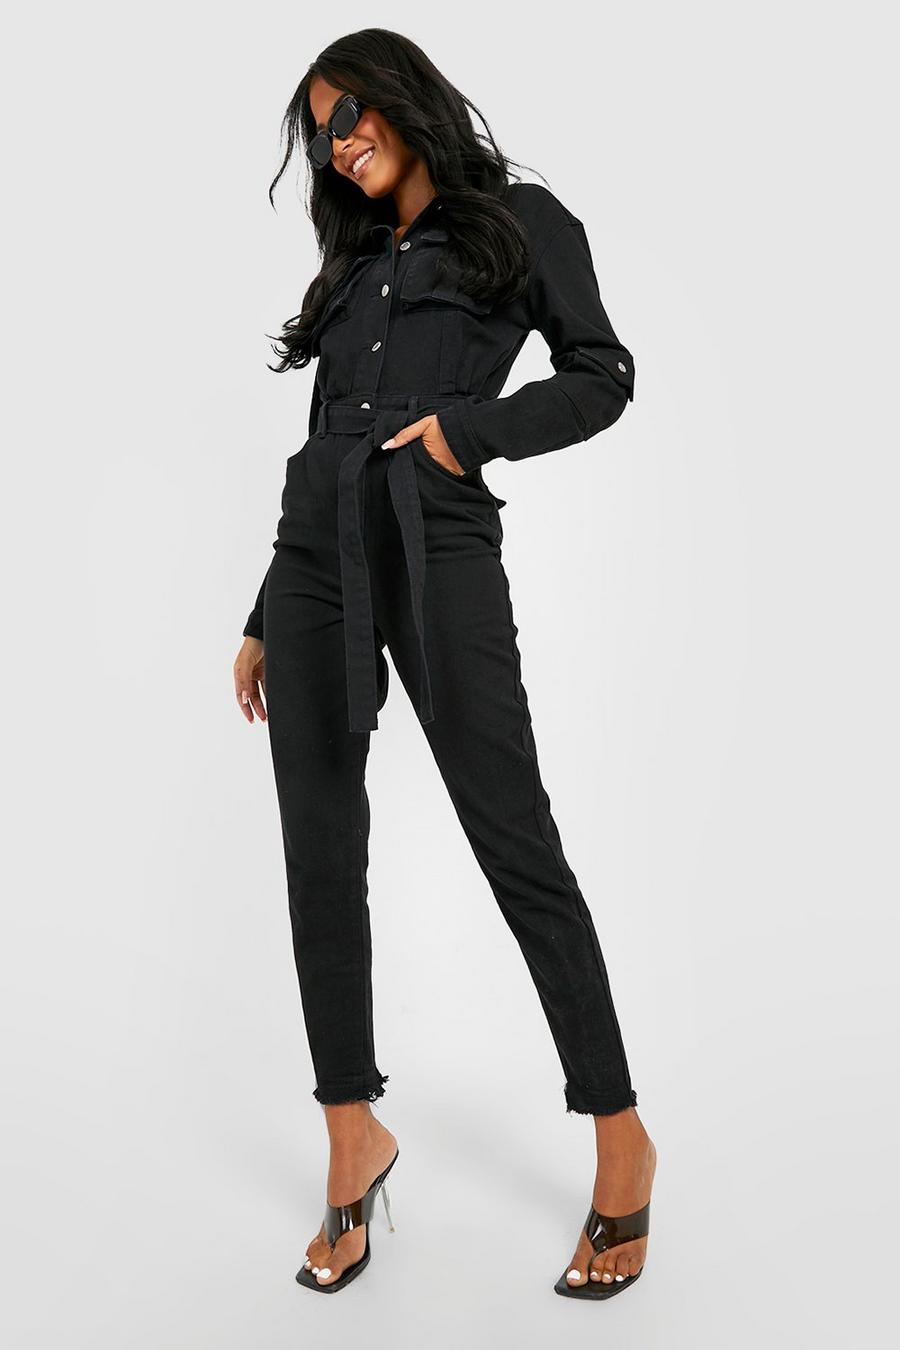 שחור סרבל ארוך מבד ג'ינס בסגנון קרגו עם חגורה וגזרת קרסול צרה, לנשים גבוהות